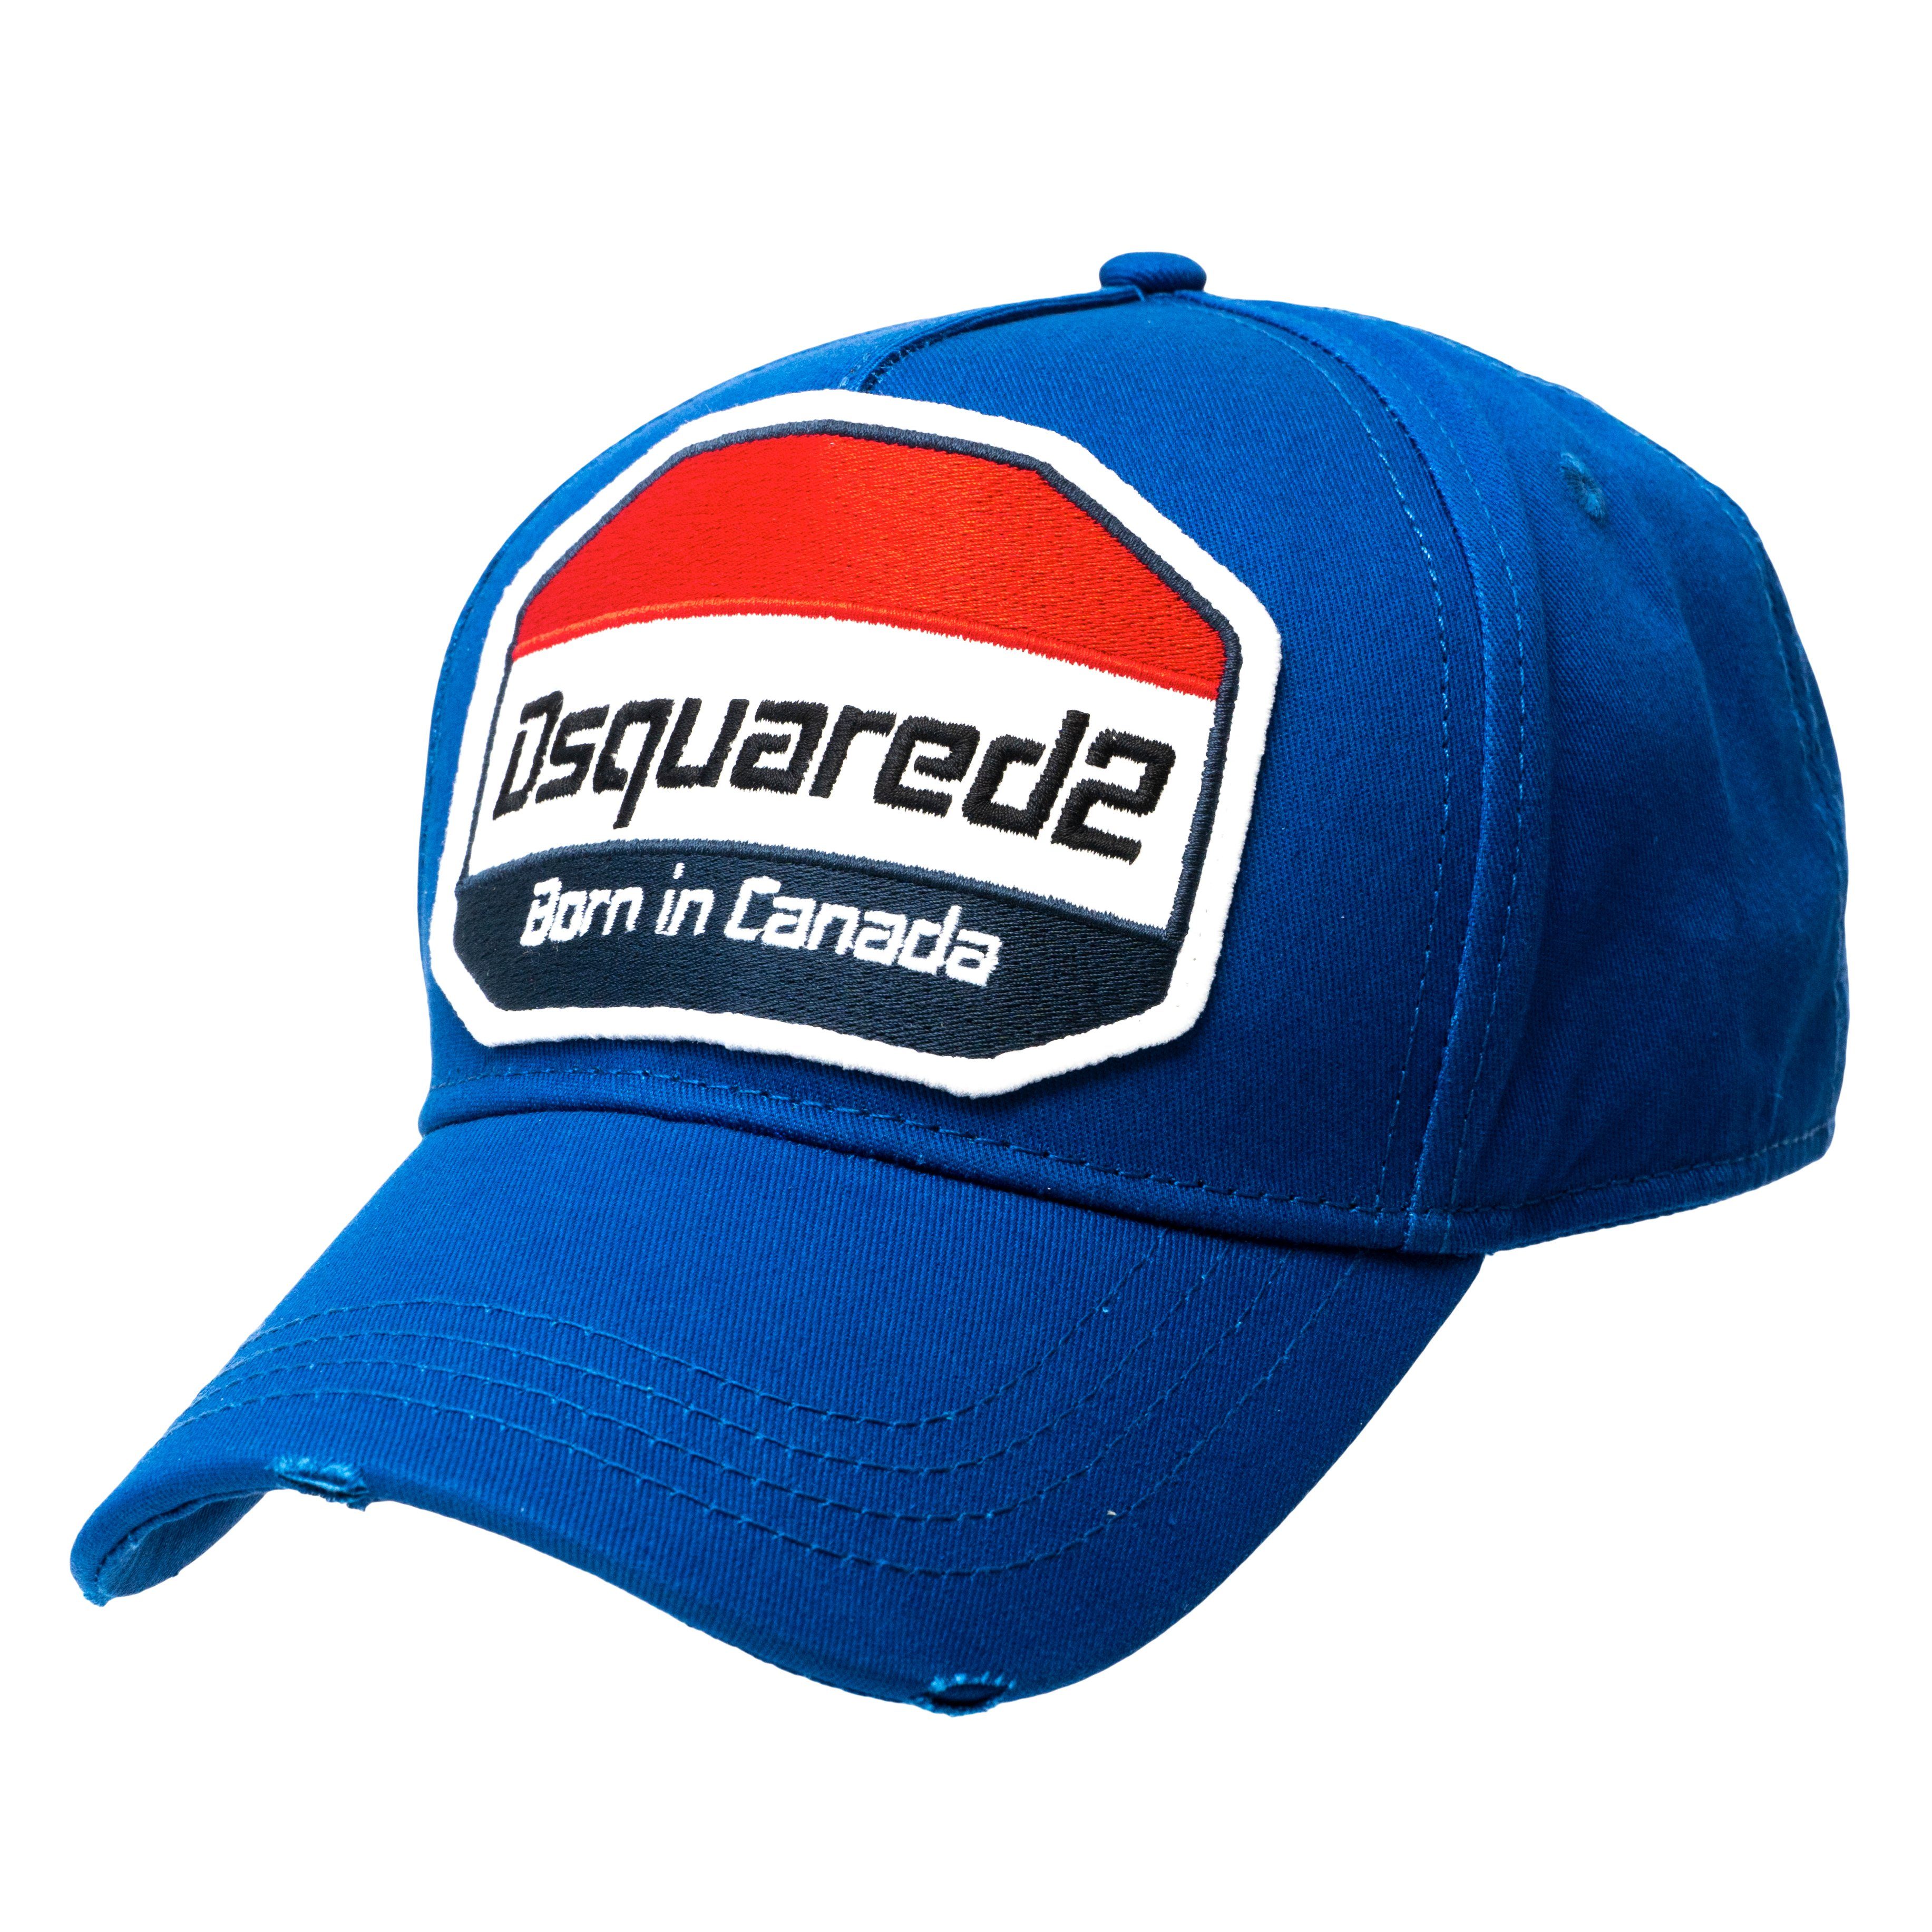 Born Canada Baseball Blau Cap in Dsquared2